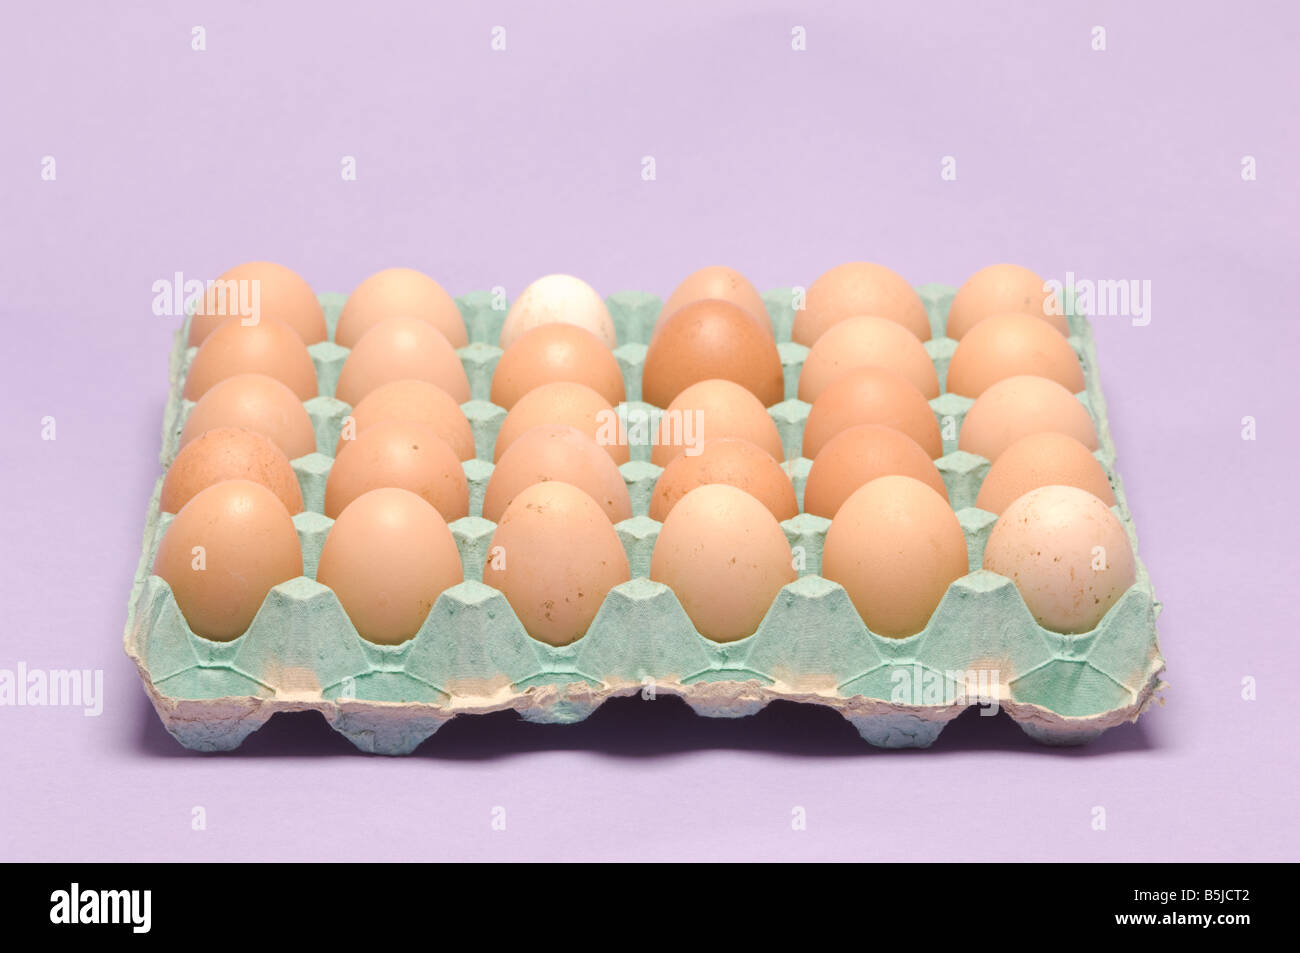 Rosolare le uova di gallina in un vassoio di cartone su sfondo lilla. Foto Stock